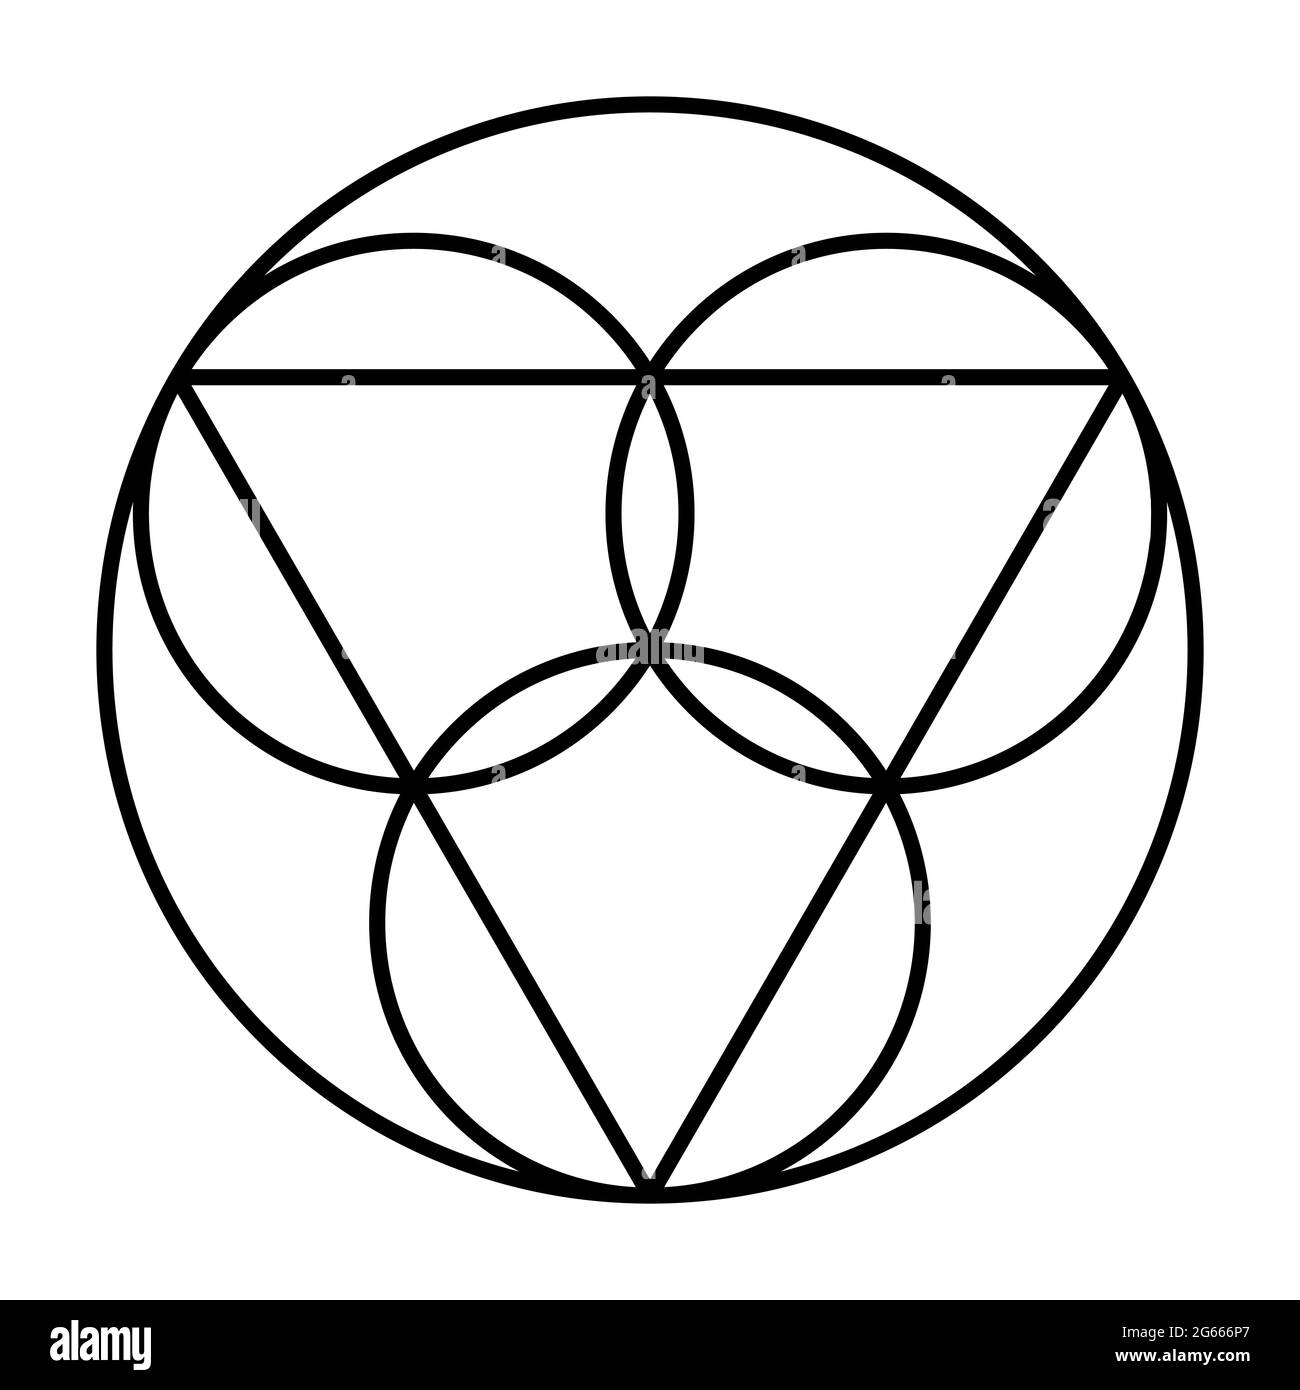 Trinity-Symbol. Drei Kreise, die den koewigen und substantiellen Vater, den Sohn Jesus Christus und den Heiligen Geist repräsentieren. Stockfoto